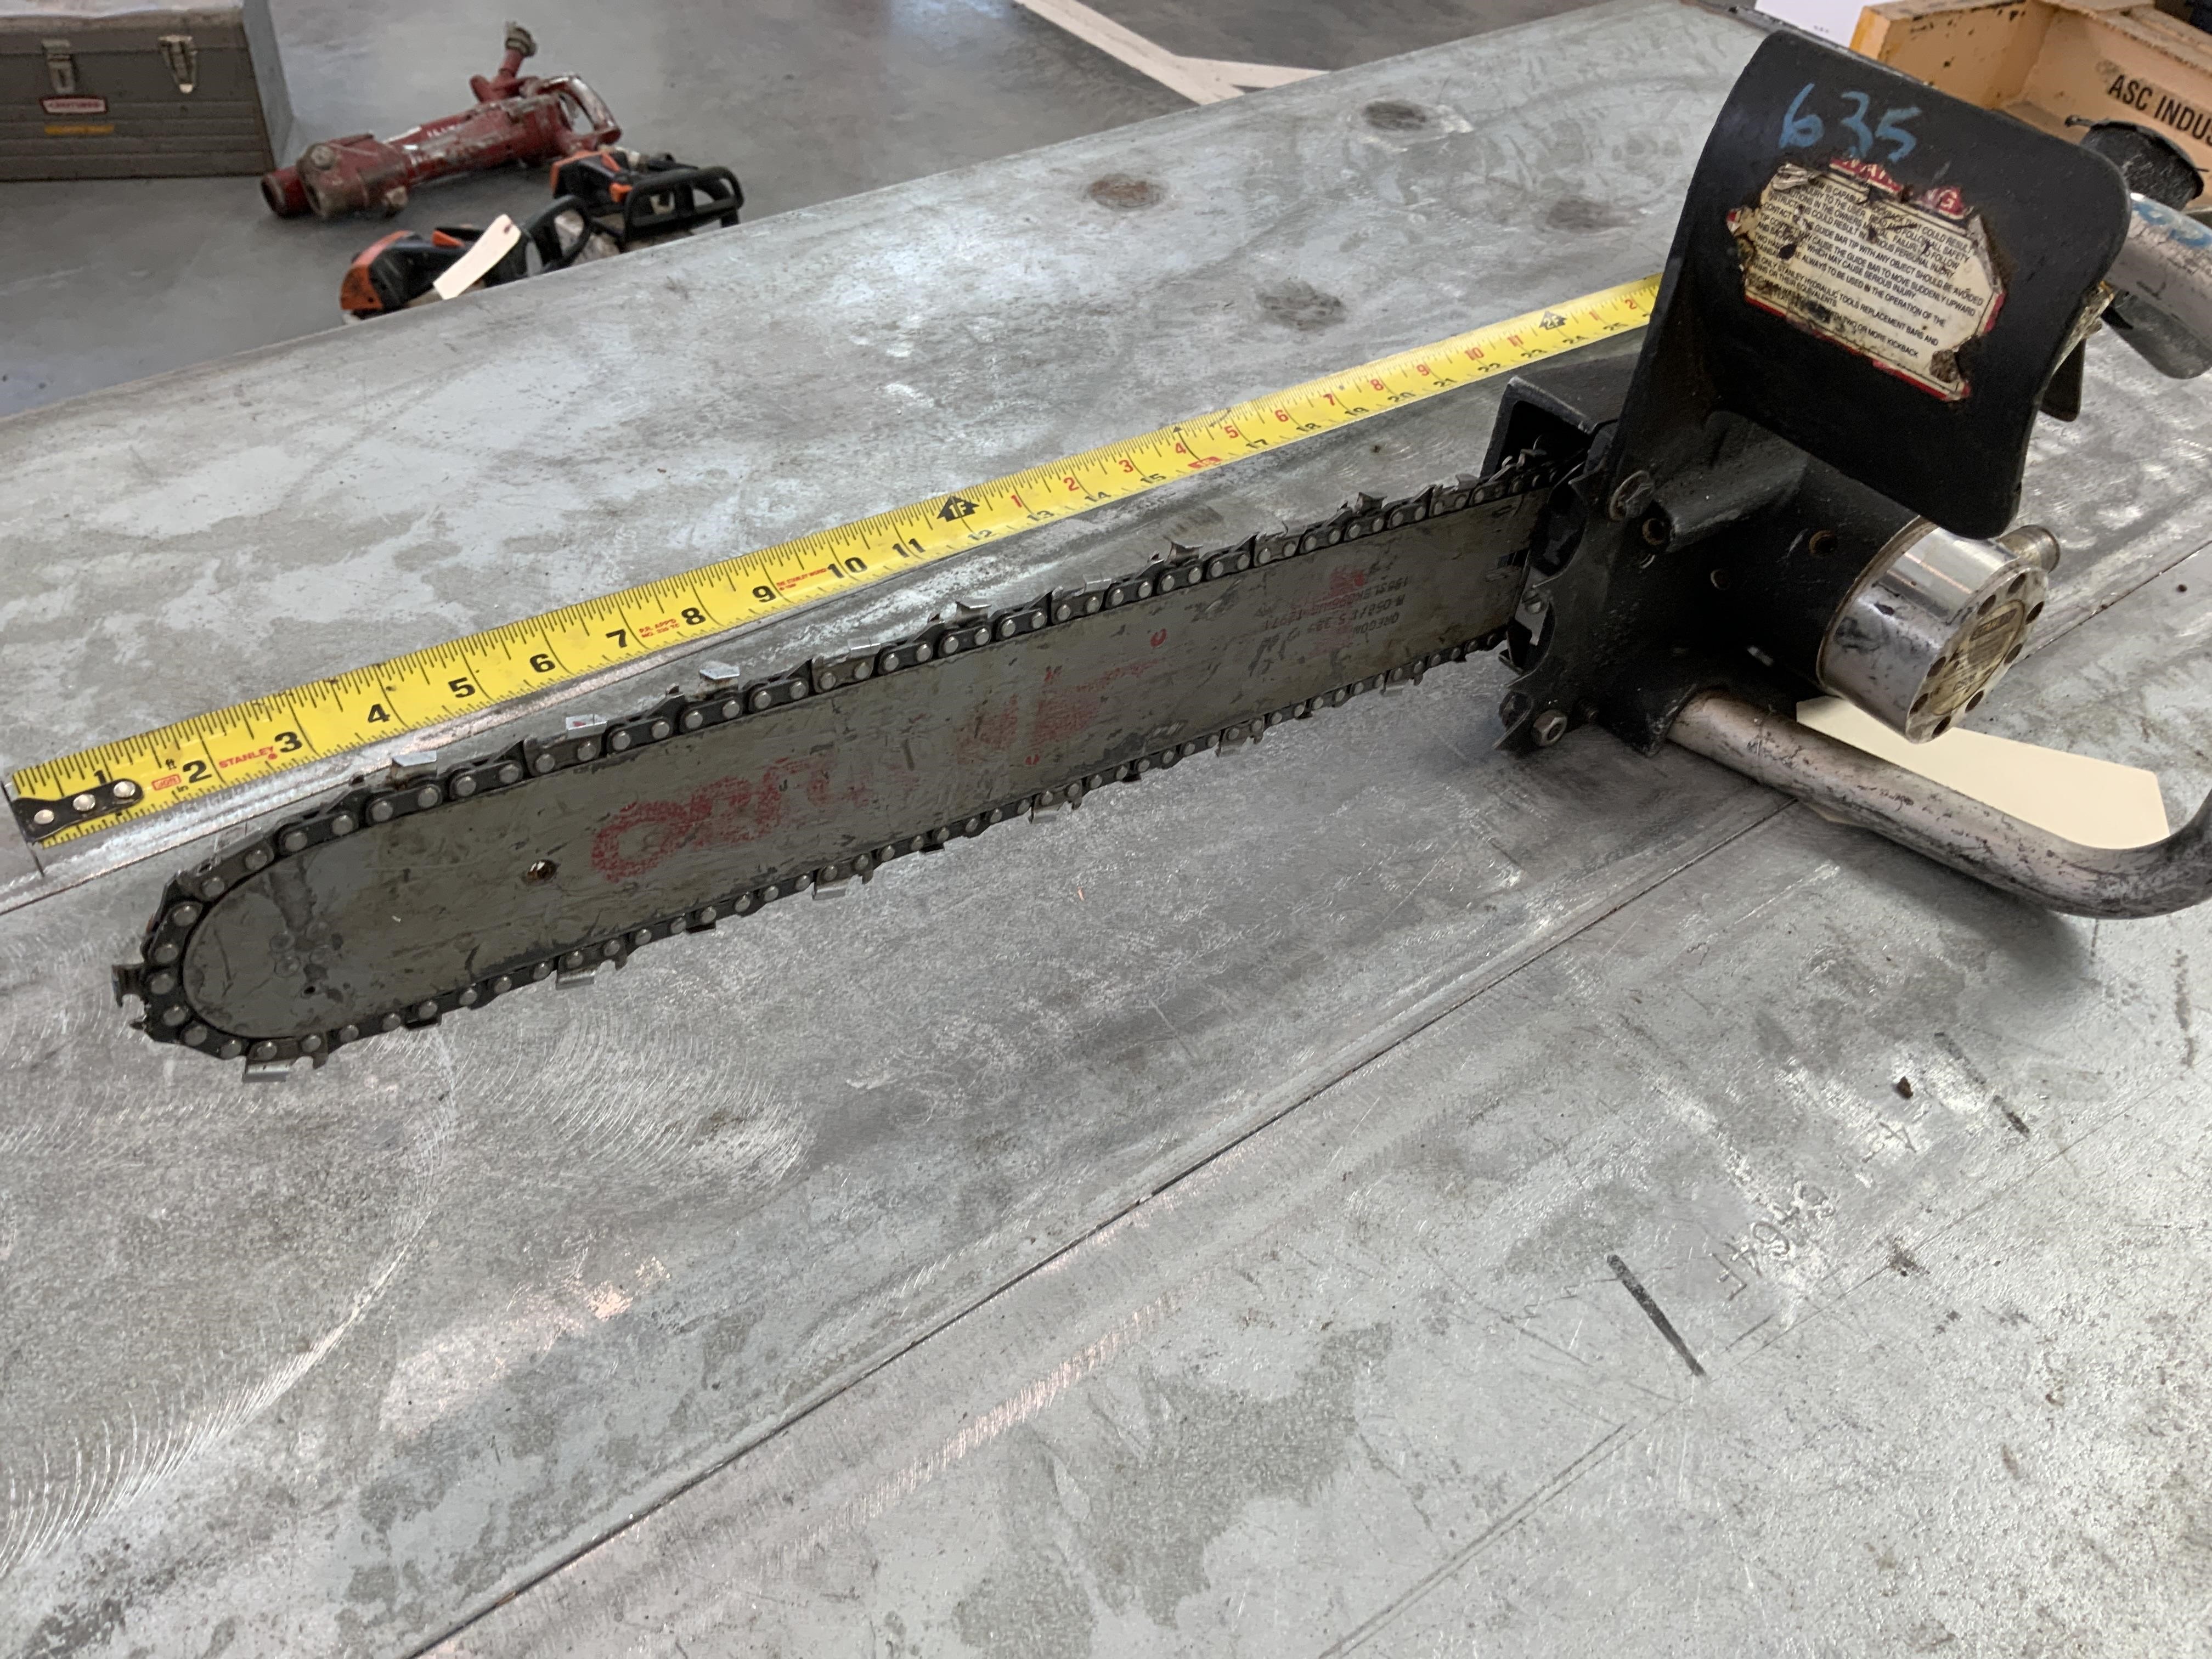 Stanley Hydraulic Chainsaw, Chainsaw for Cutting Wood